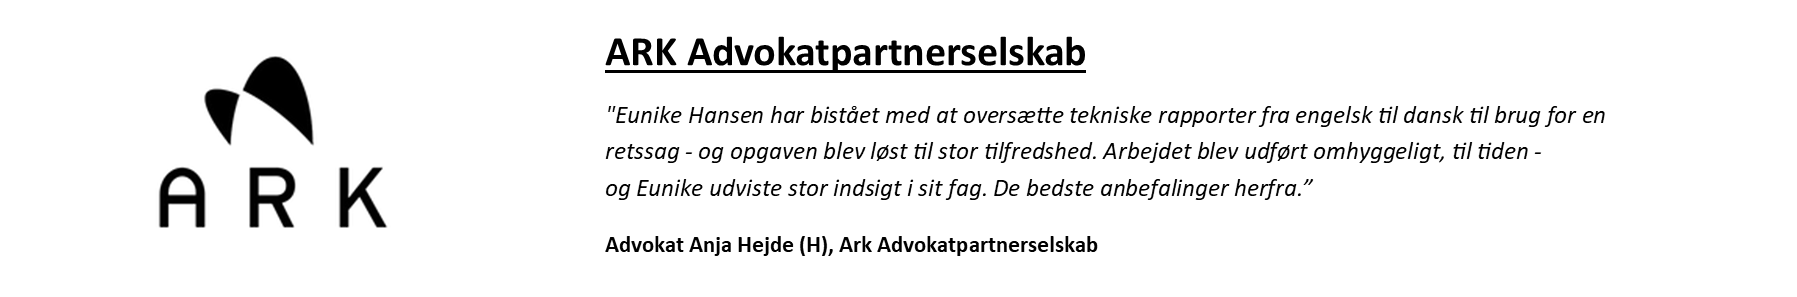 ARK-DK